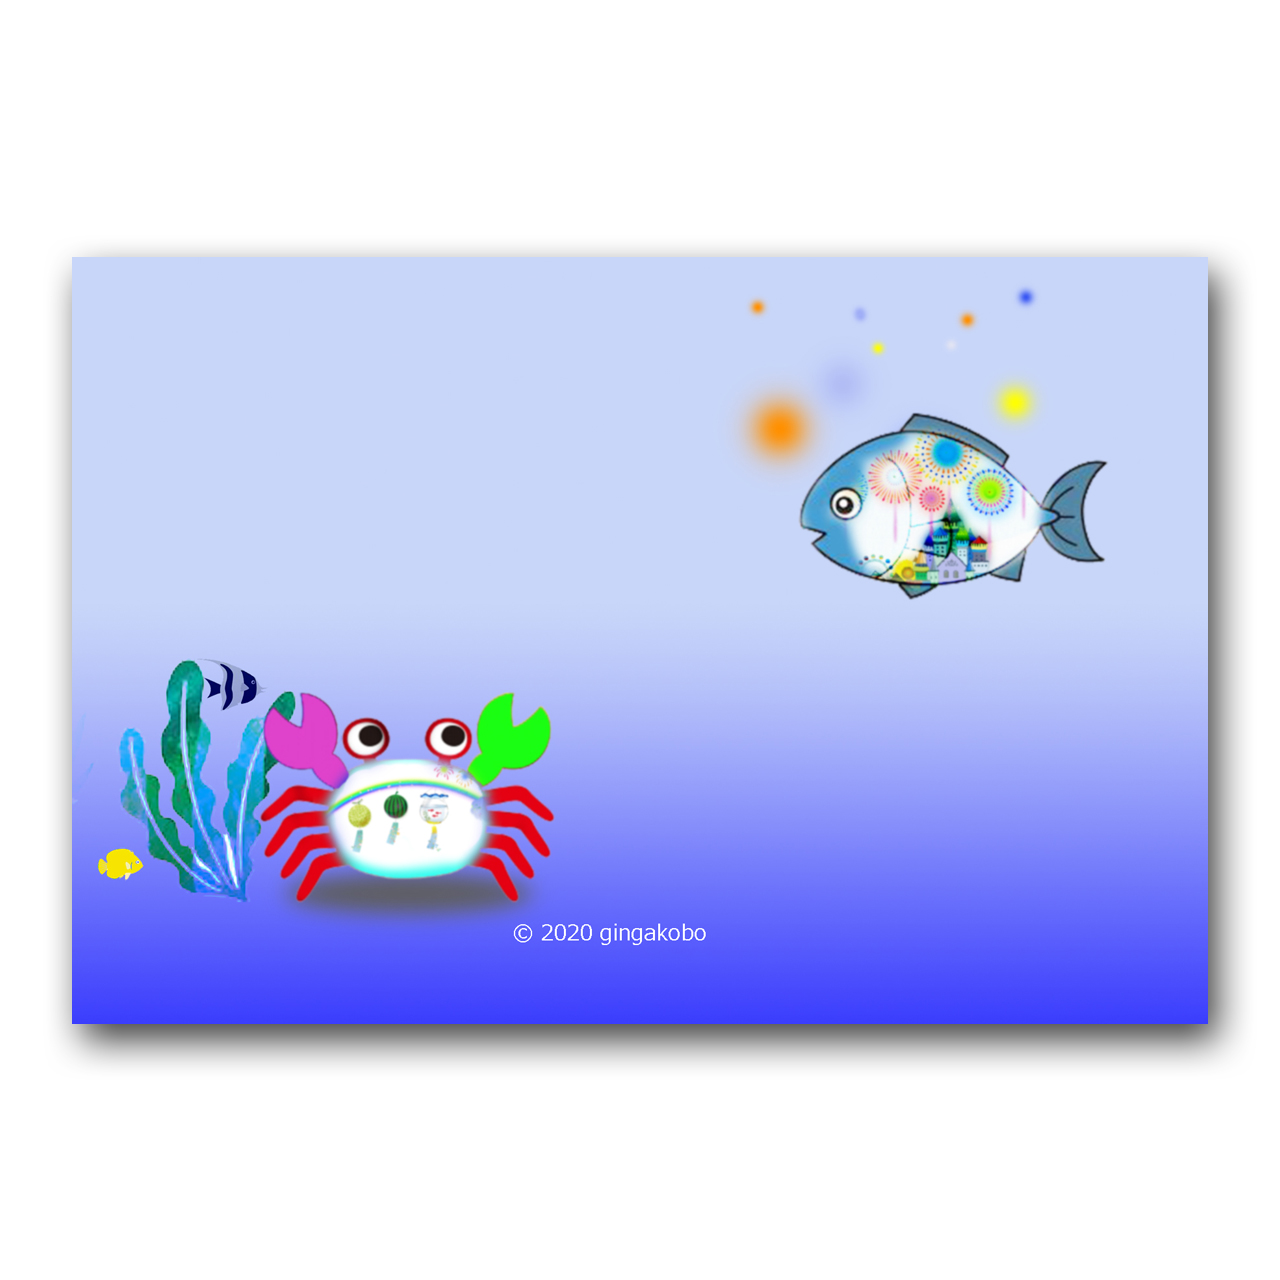 海にも夏が来た ほっこり癒しのイラストポストカード2枚組 No 1119 Iichi ハンドメイド クラフト作品 手仕事品の通販